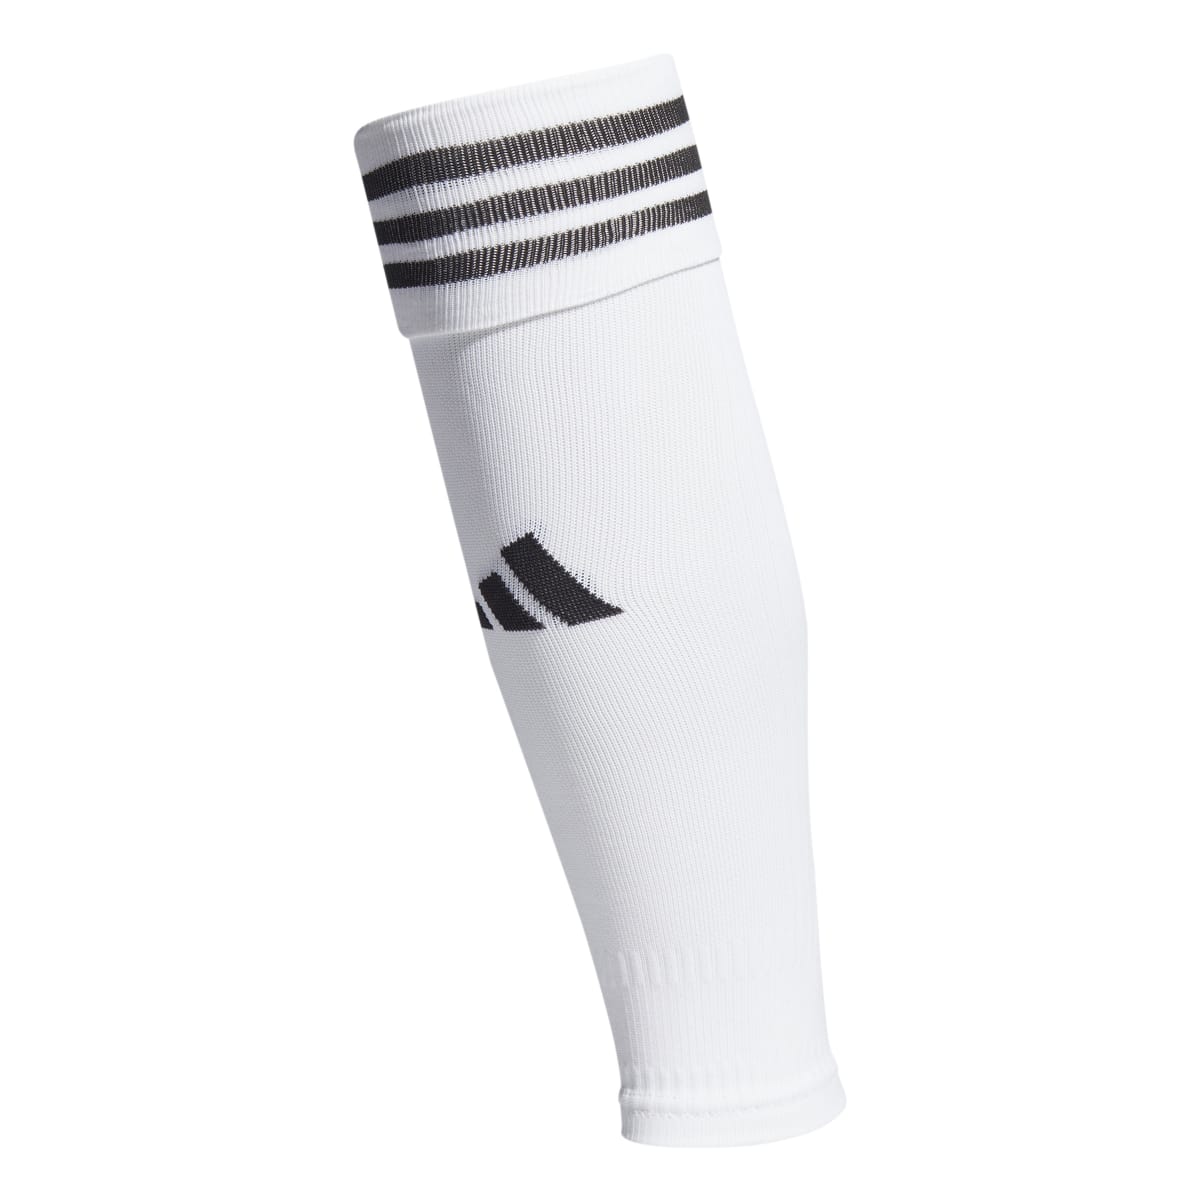 Adidas Team Sleeve 23 White/Black